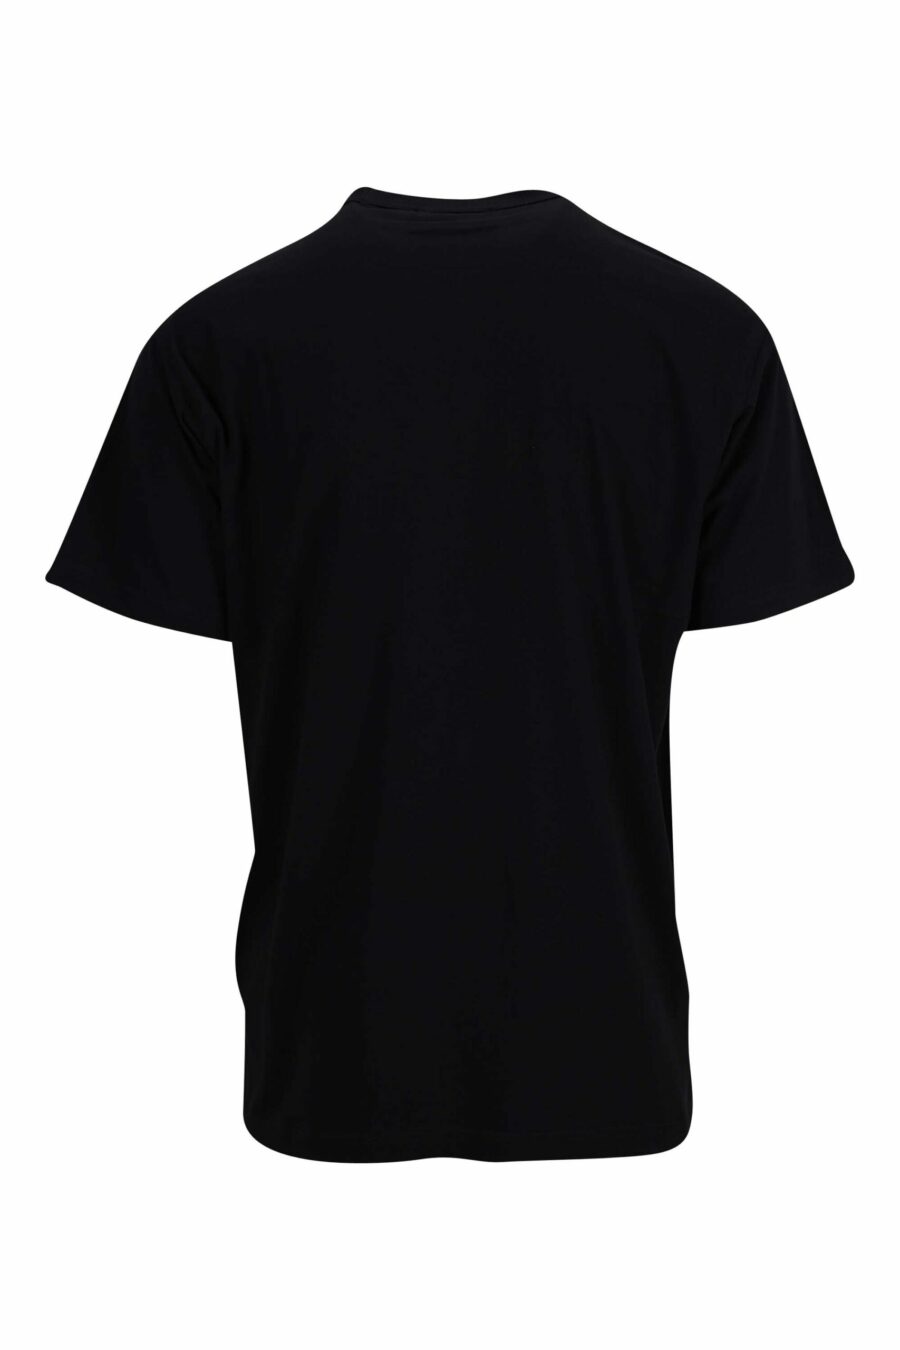 Camiseta negra con minilogo circular azul metálico - 8052019402216 1 scaled